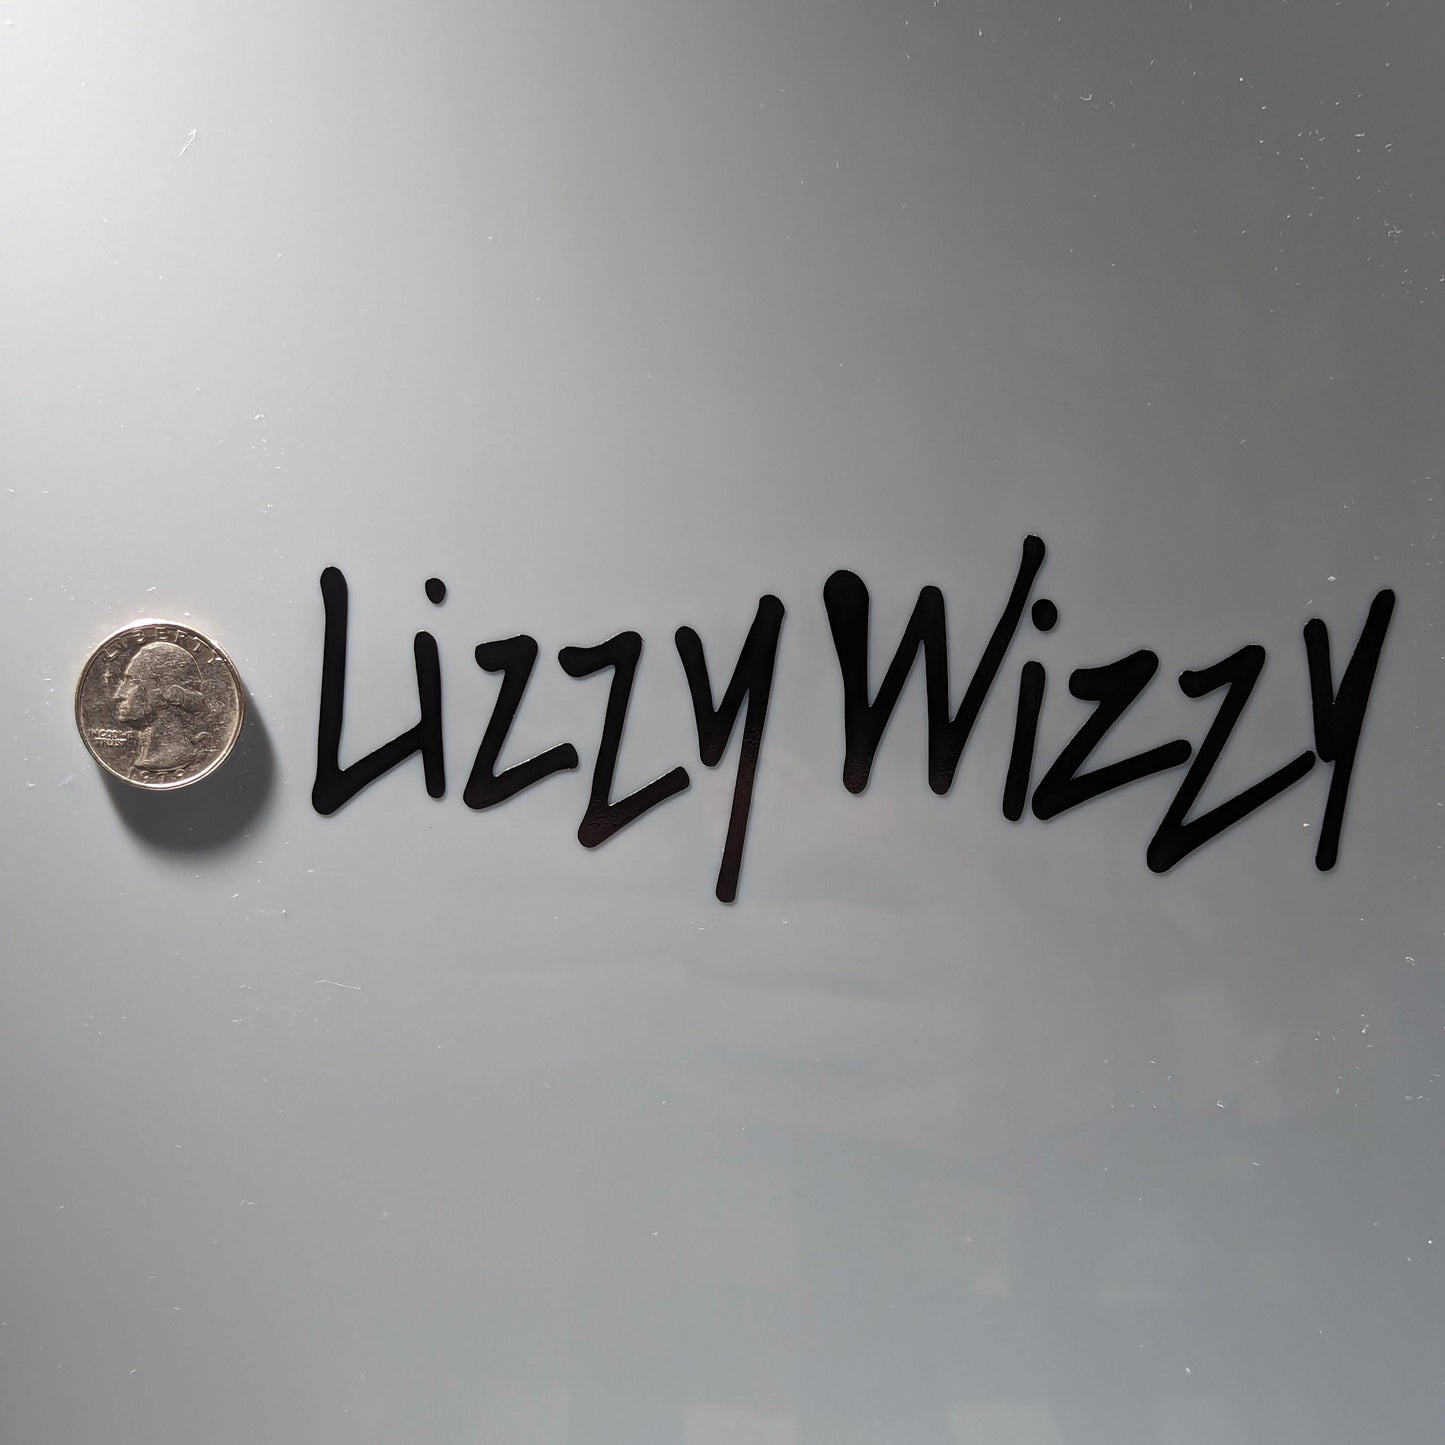 Cyberpunk Lizzy Wizzy Decal